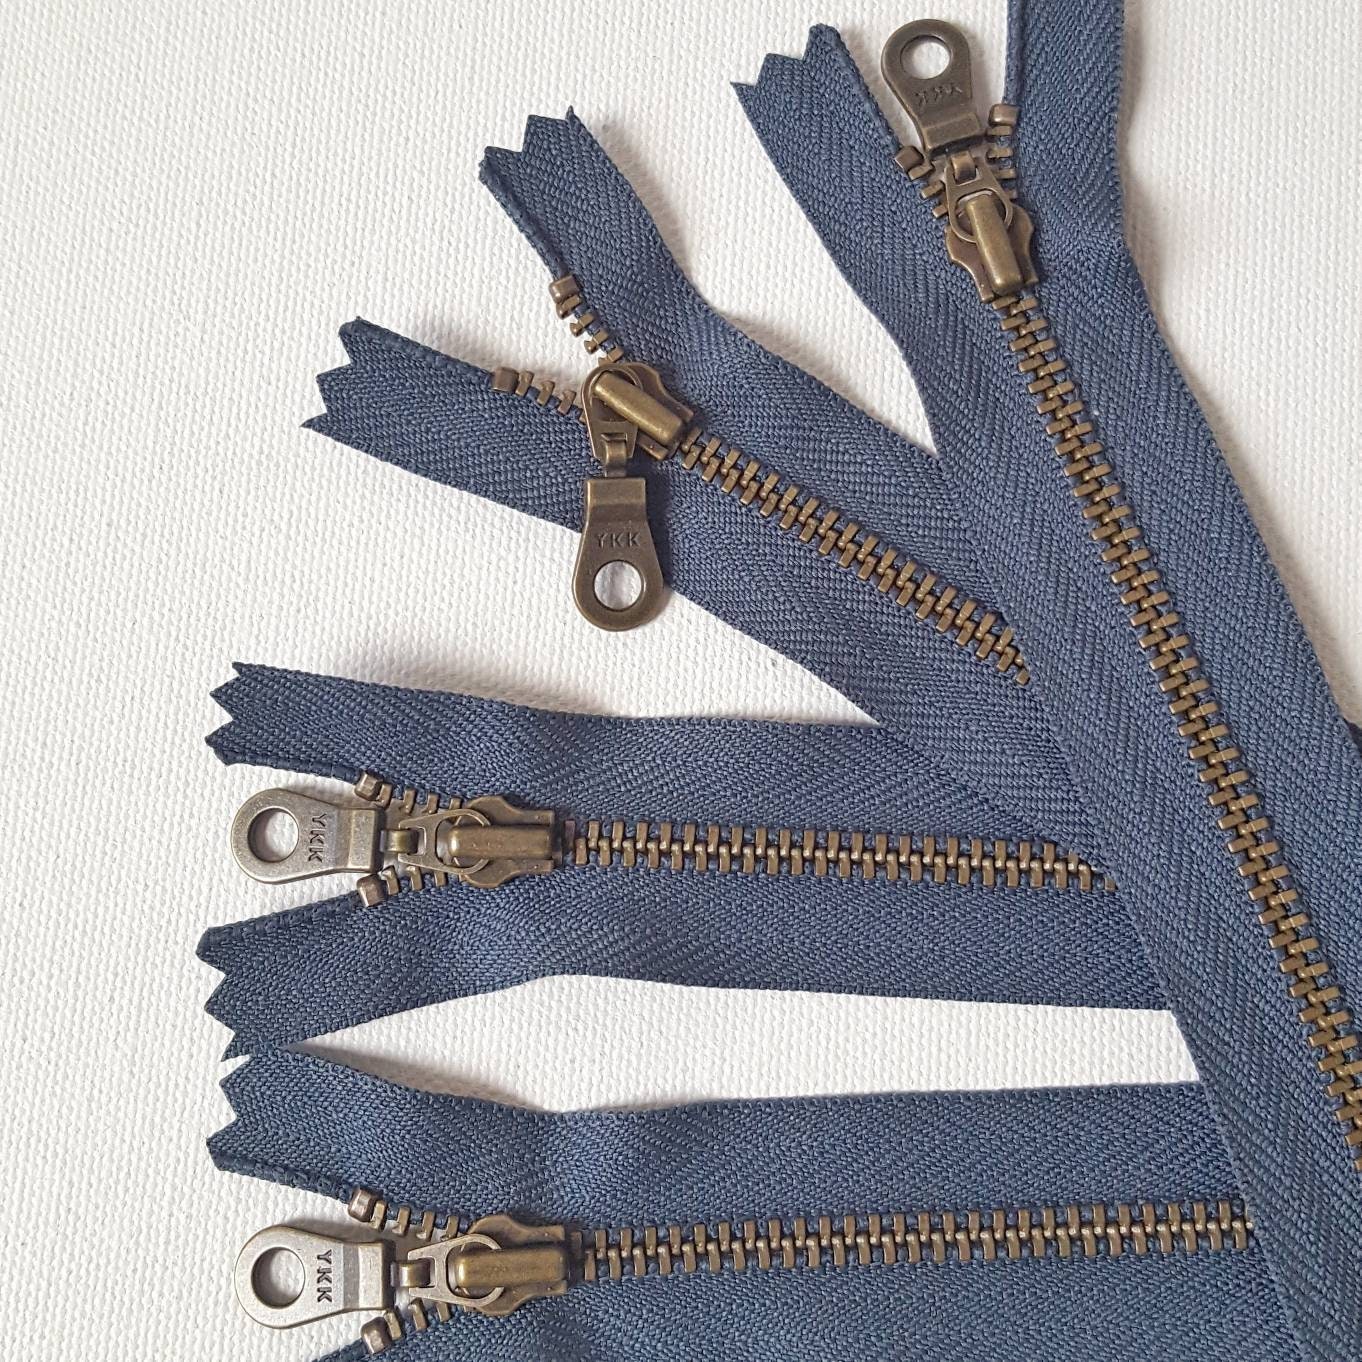 YKK Zippers – King Textiles